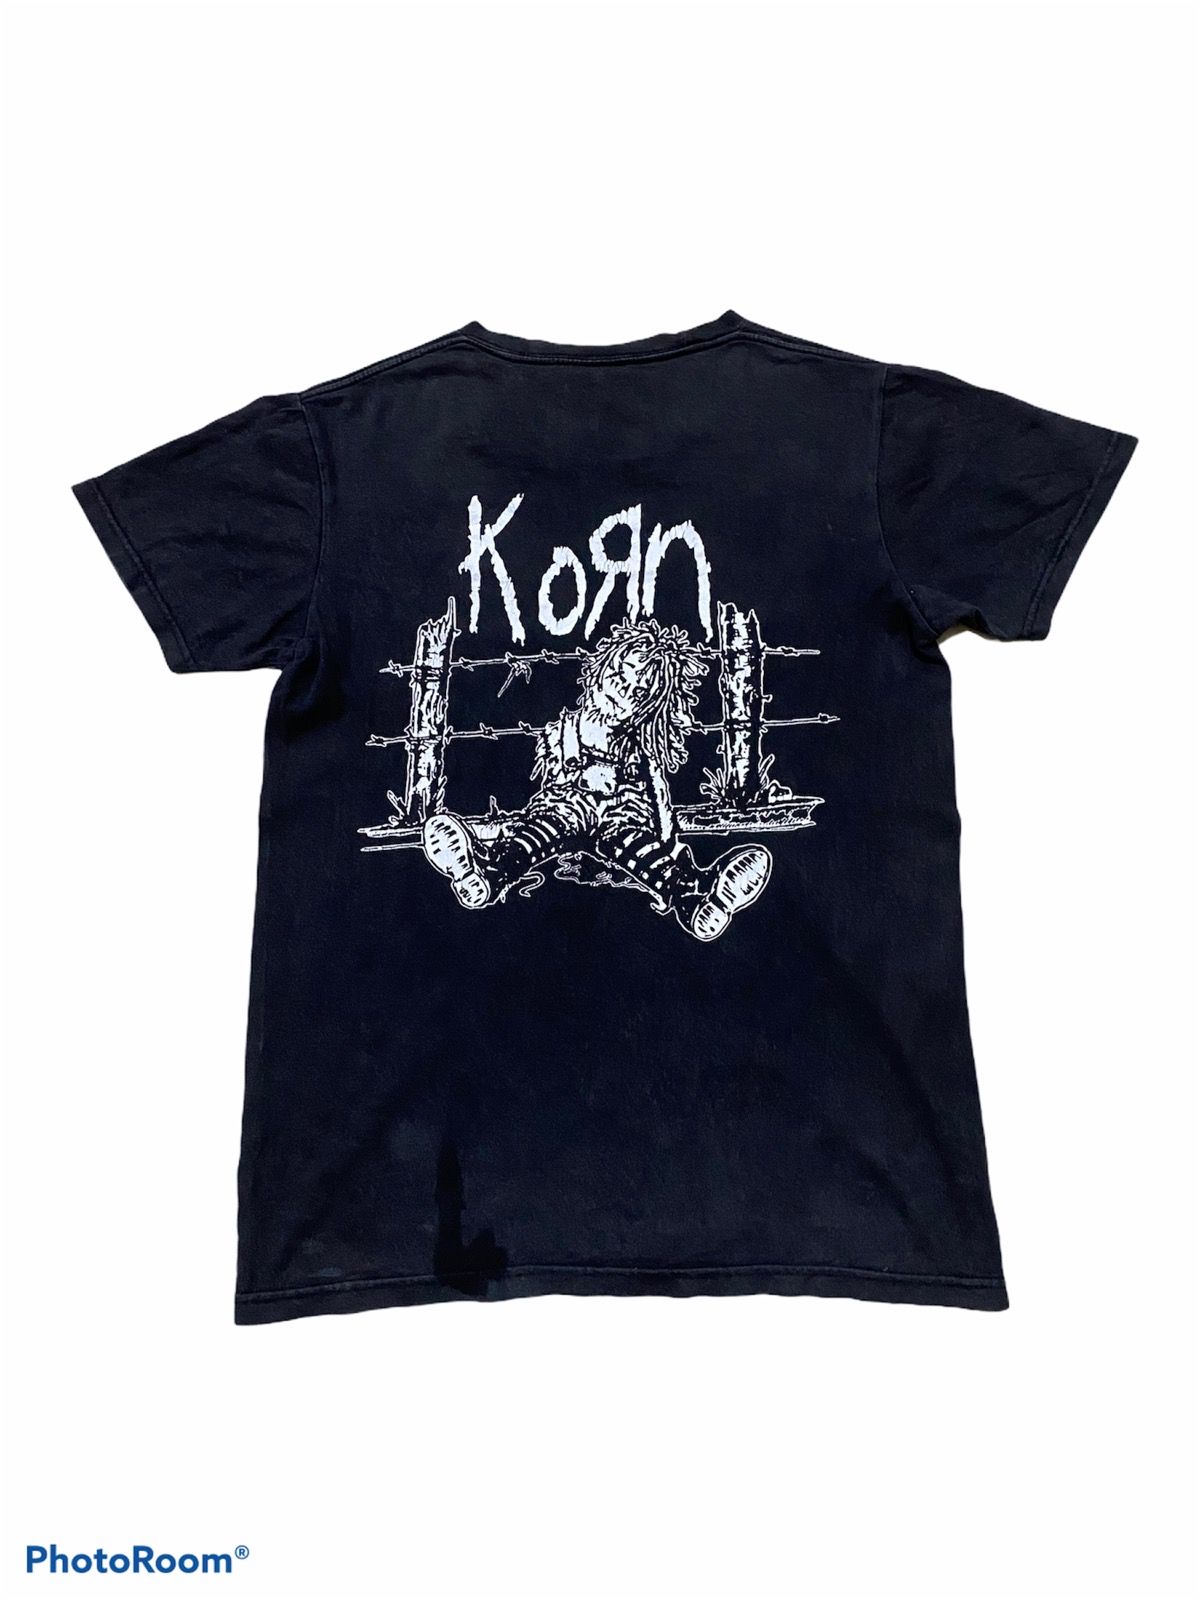 Vintage Rare Korn T-shirt Size US S / EU 44-46 / 1 - 1 Preview